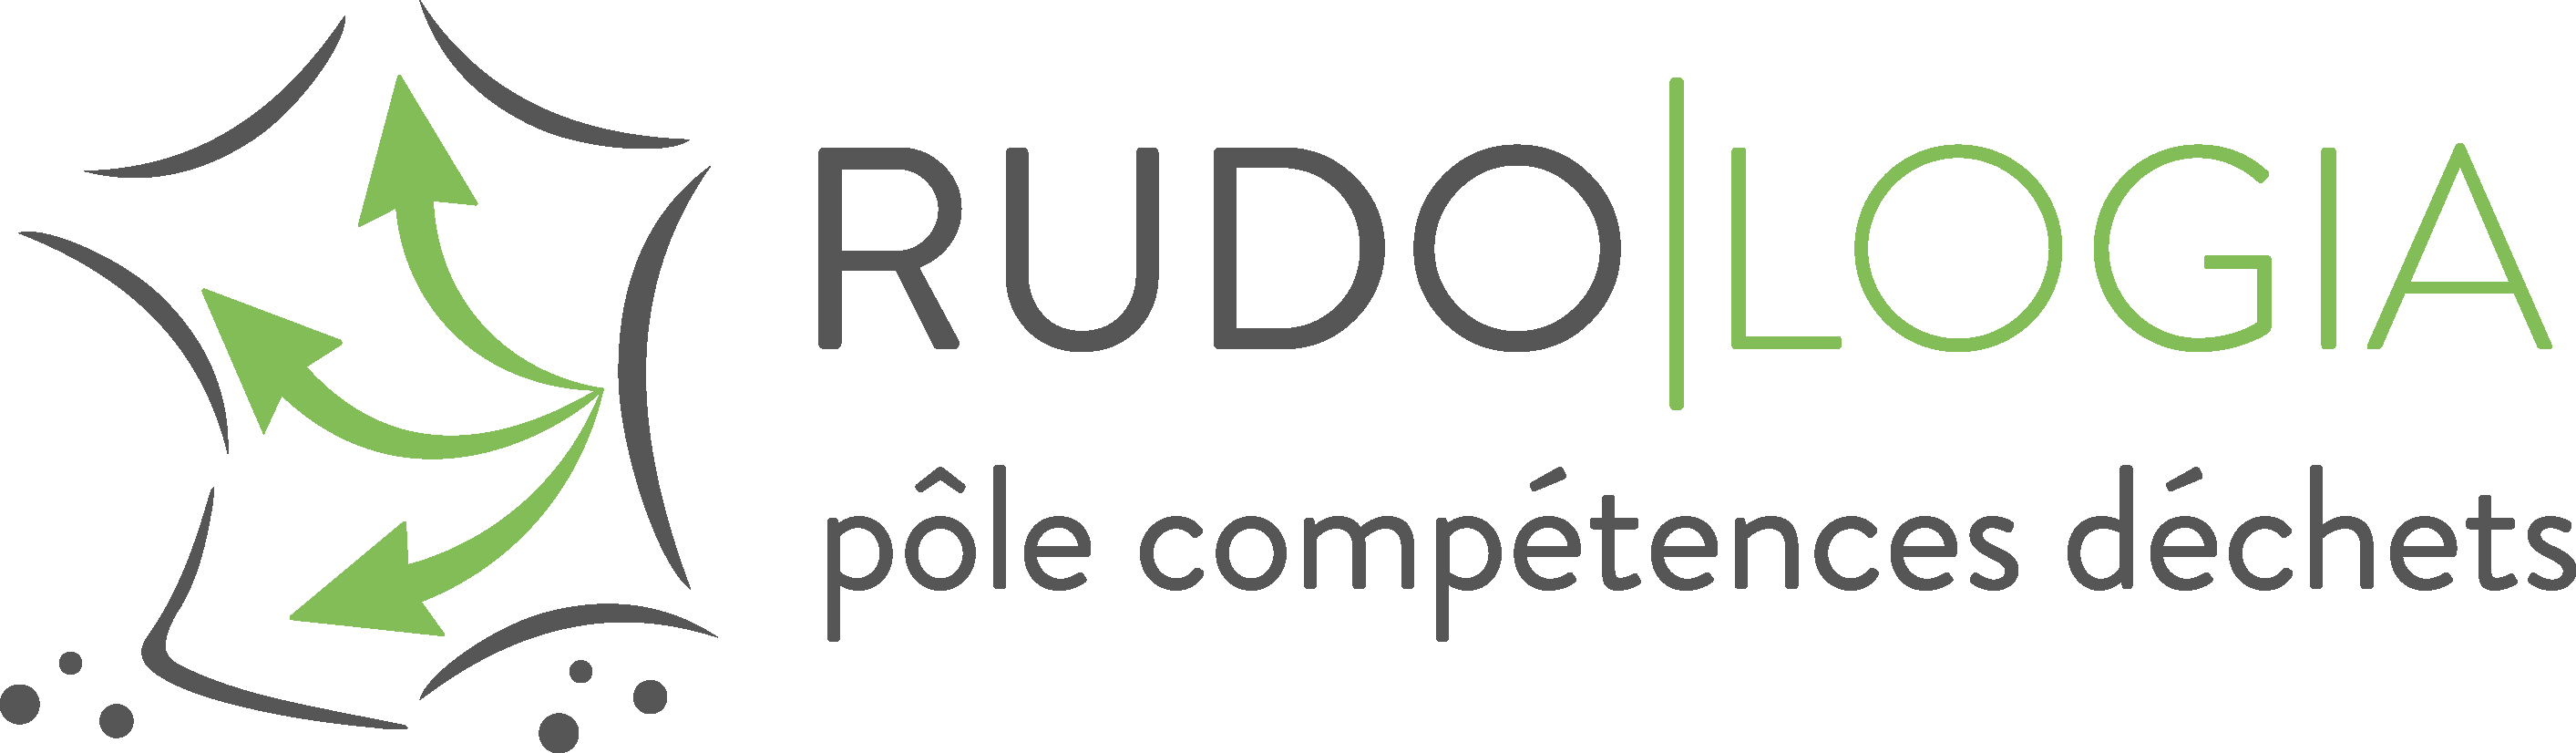 logo rudologia